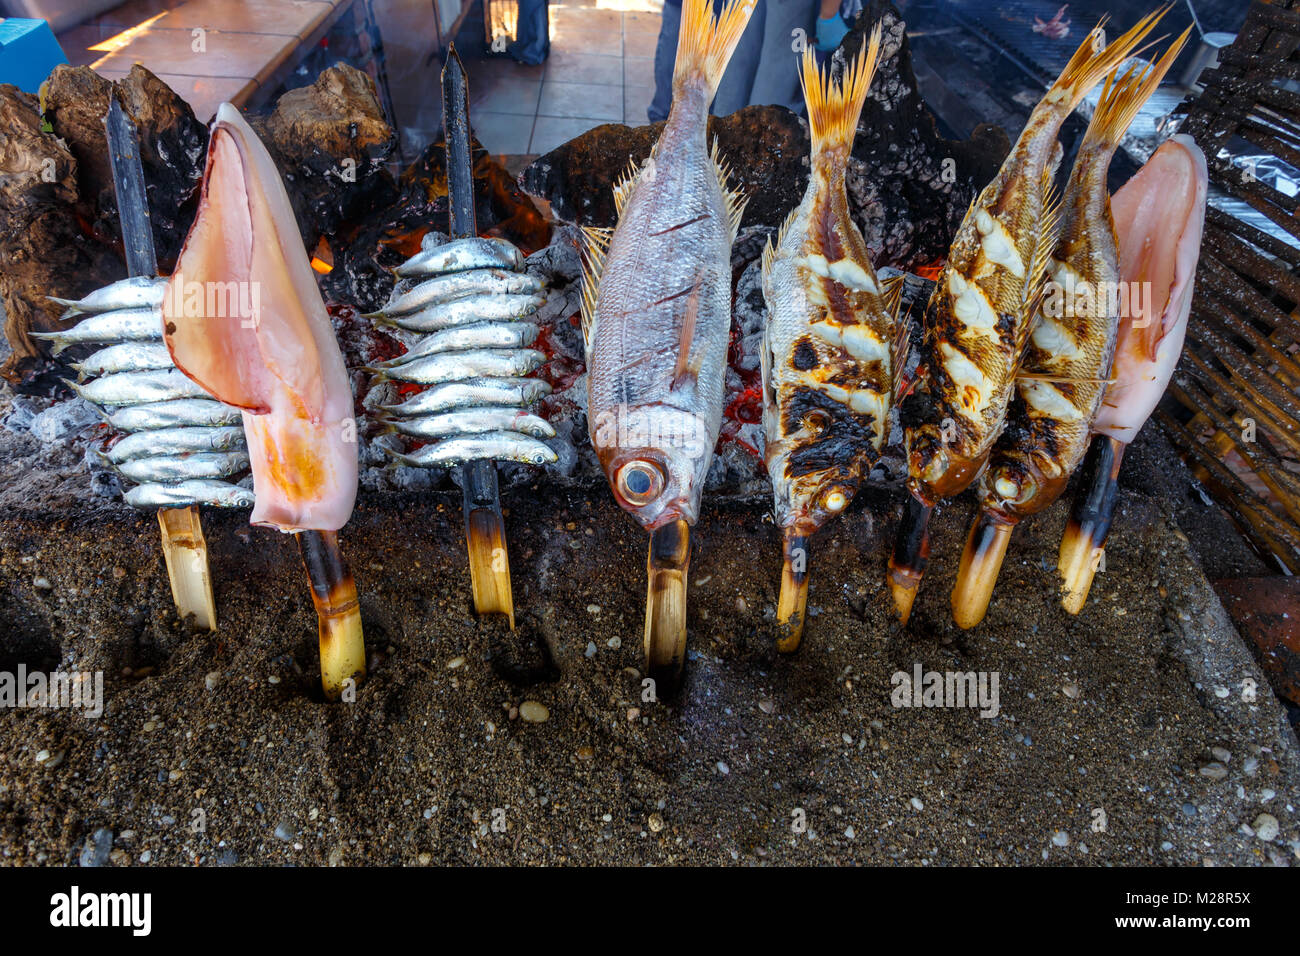 La nourriture de poissons traditionnels Espeto Andalousie, espagne. Banque D'Images